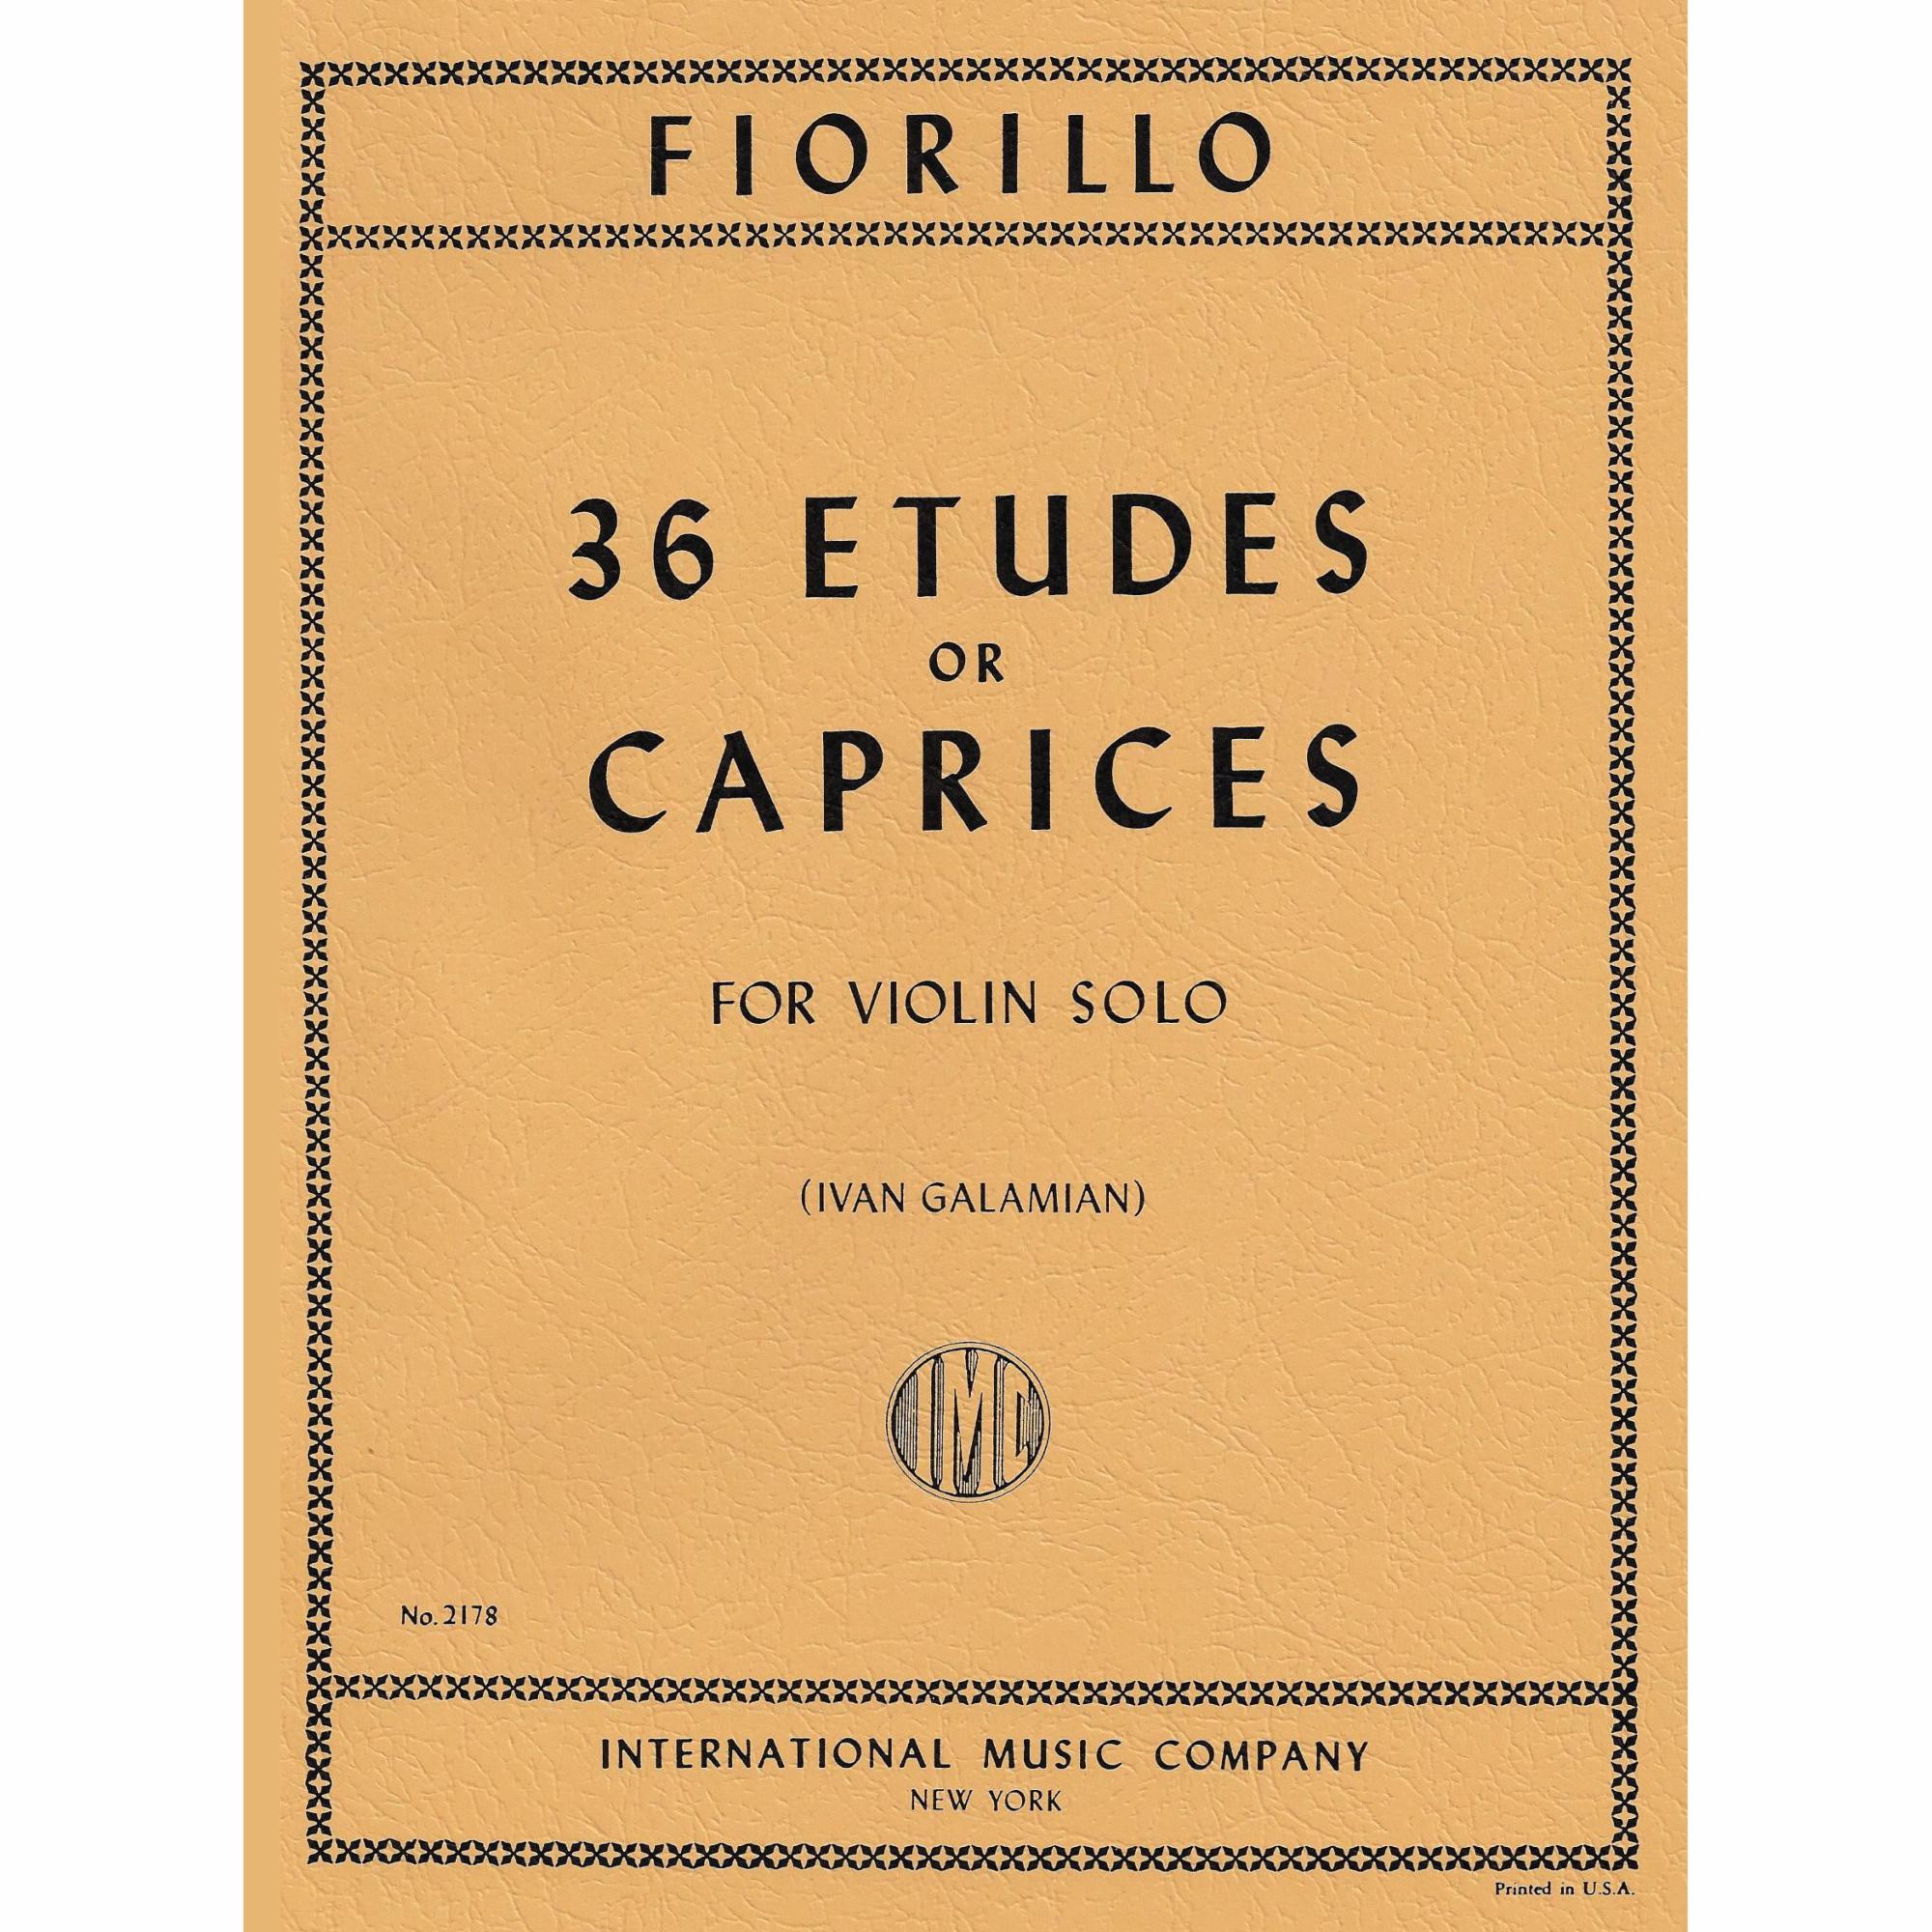 Fiorillo -- 36 Etudes or Caprices for Violin